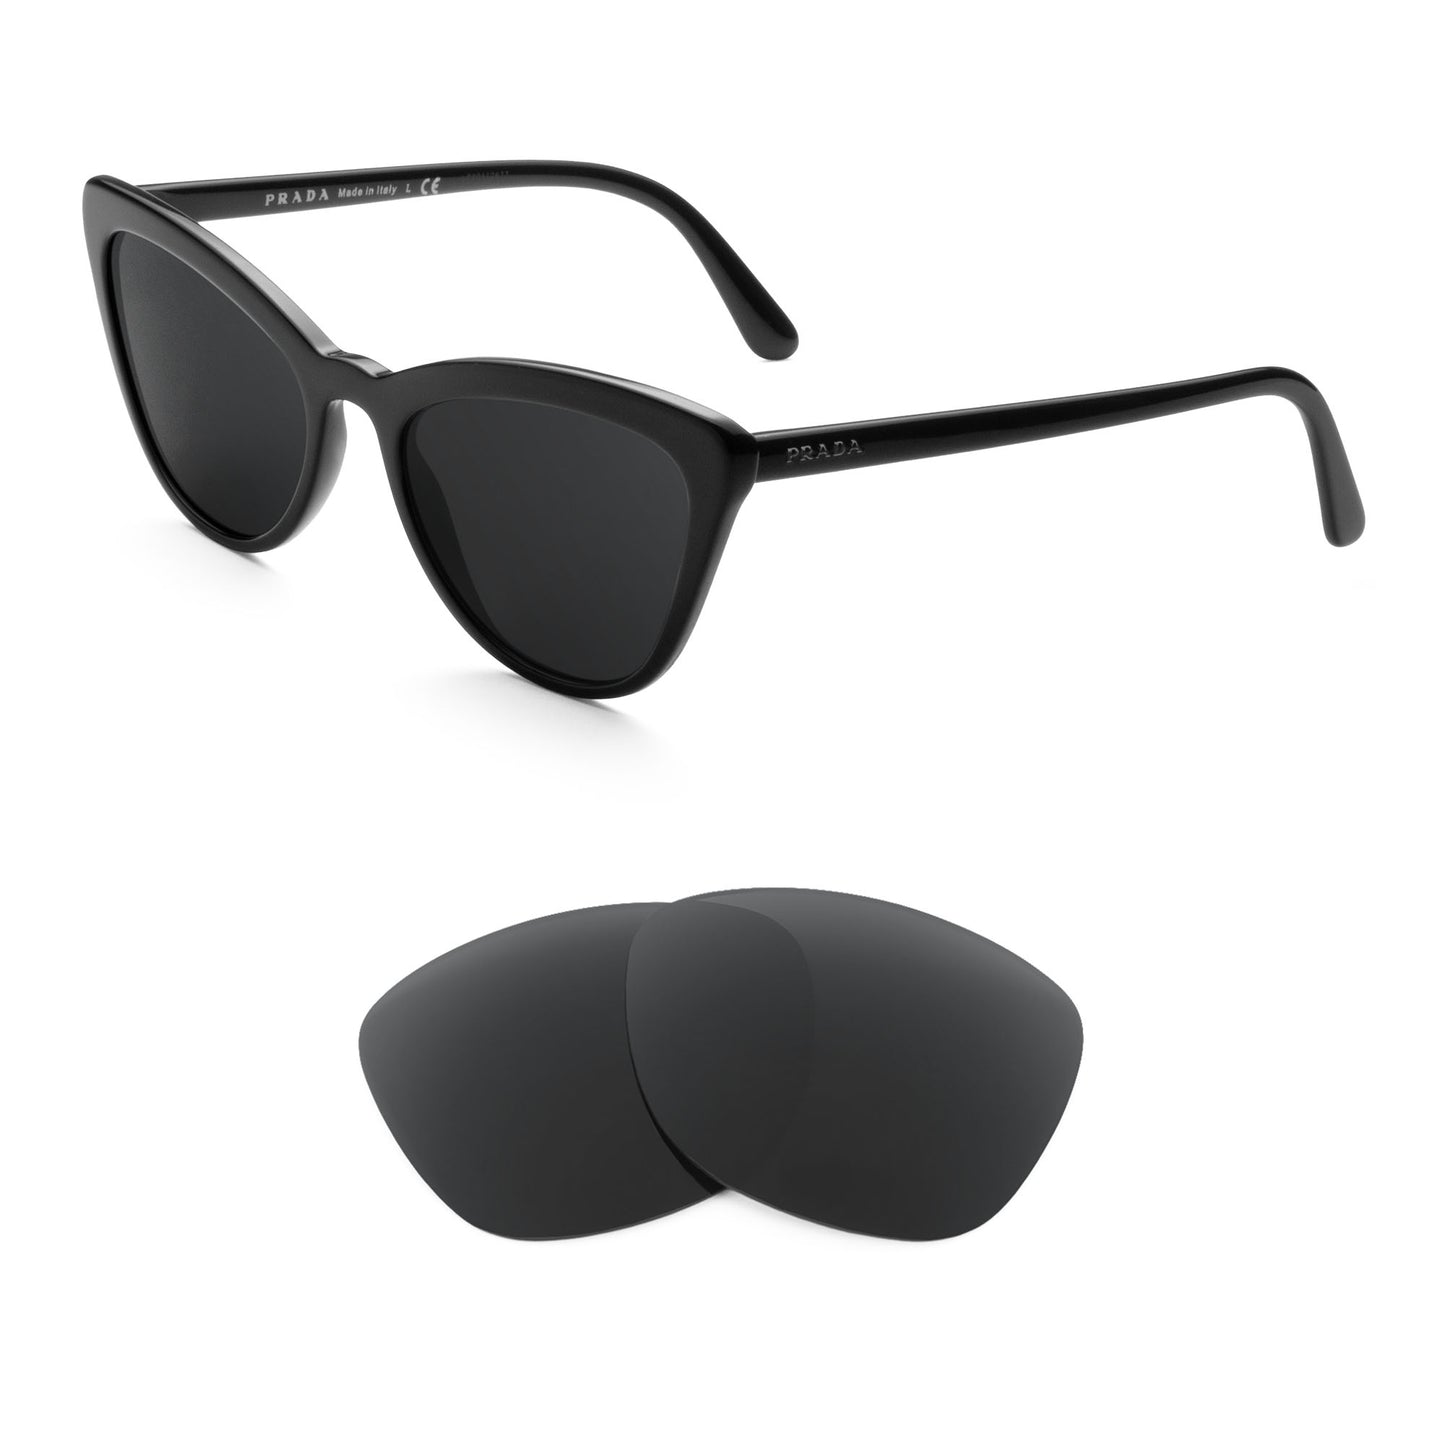 Prada PR 01VS sunglasses with replacement lenses